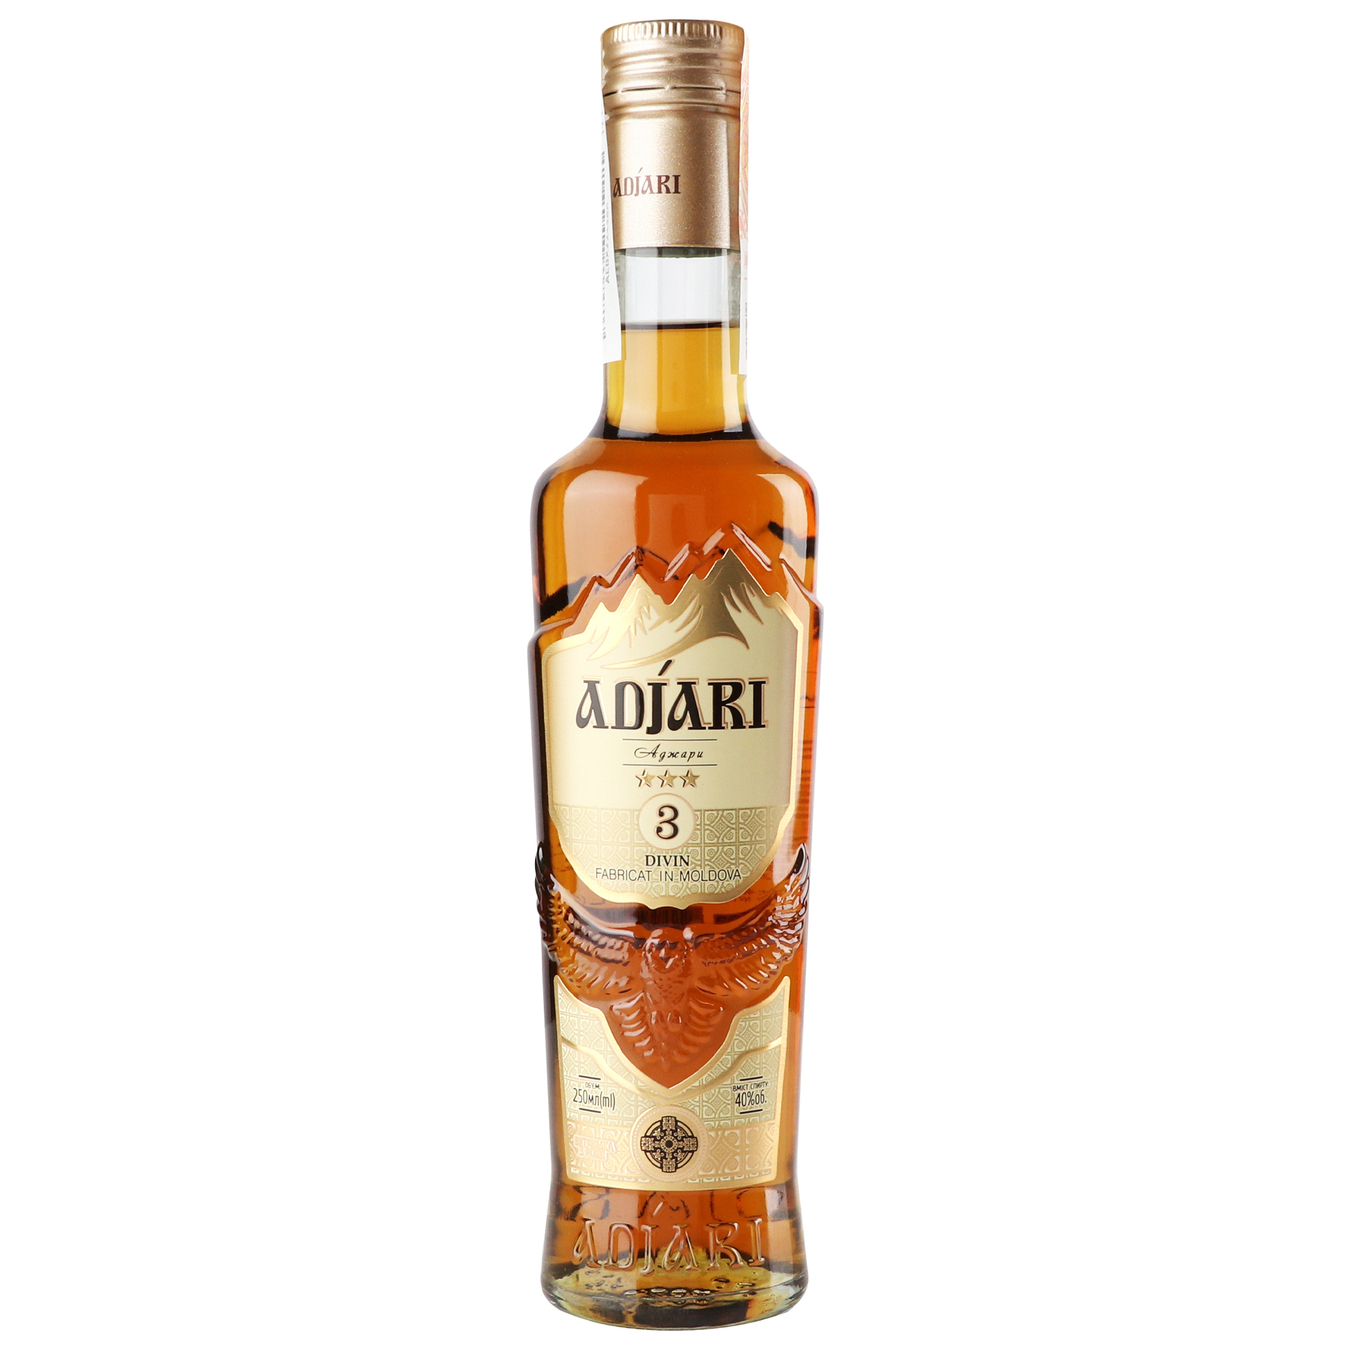 Cognac Adjari 3 stars 40% 0.25 l